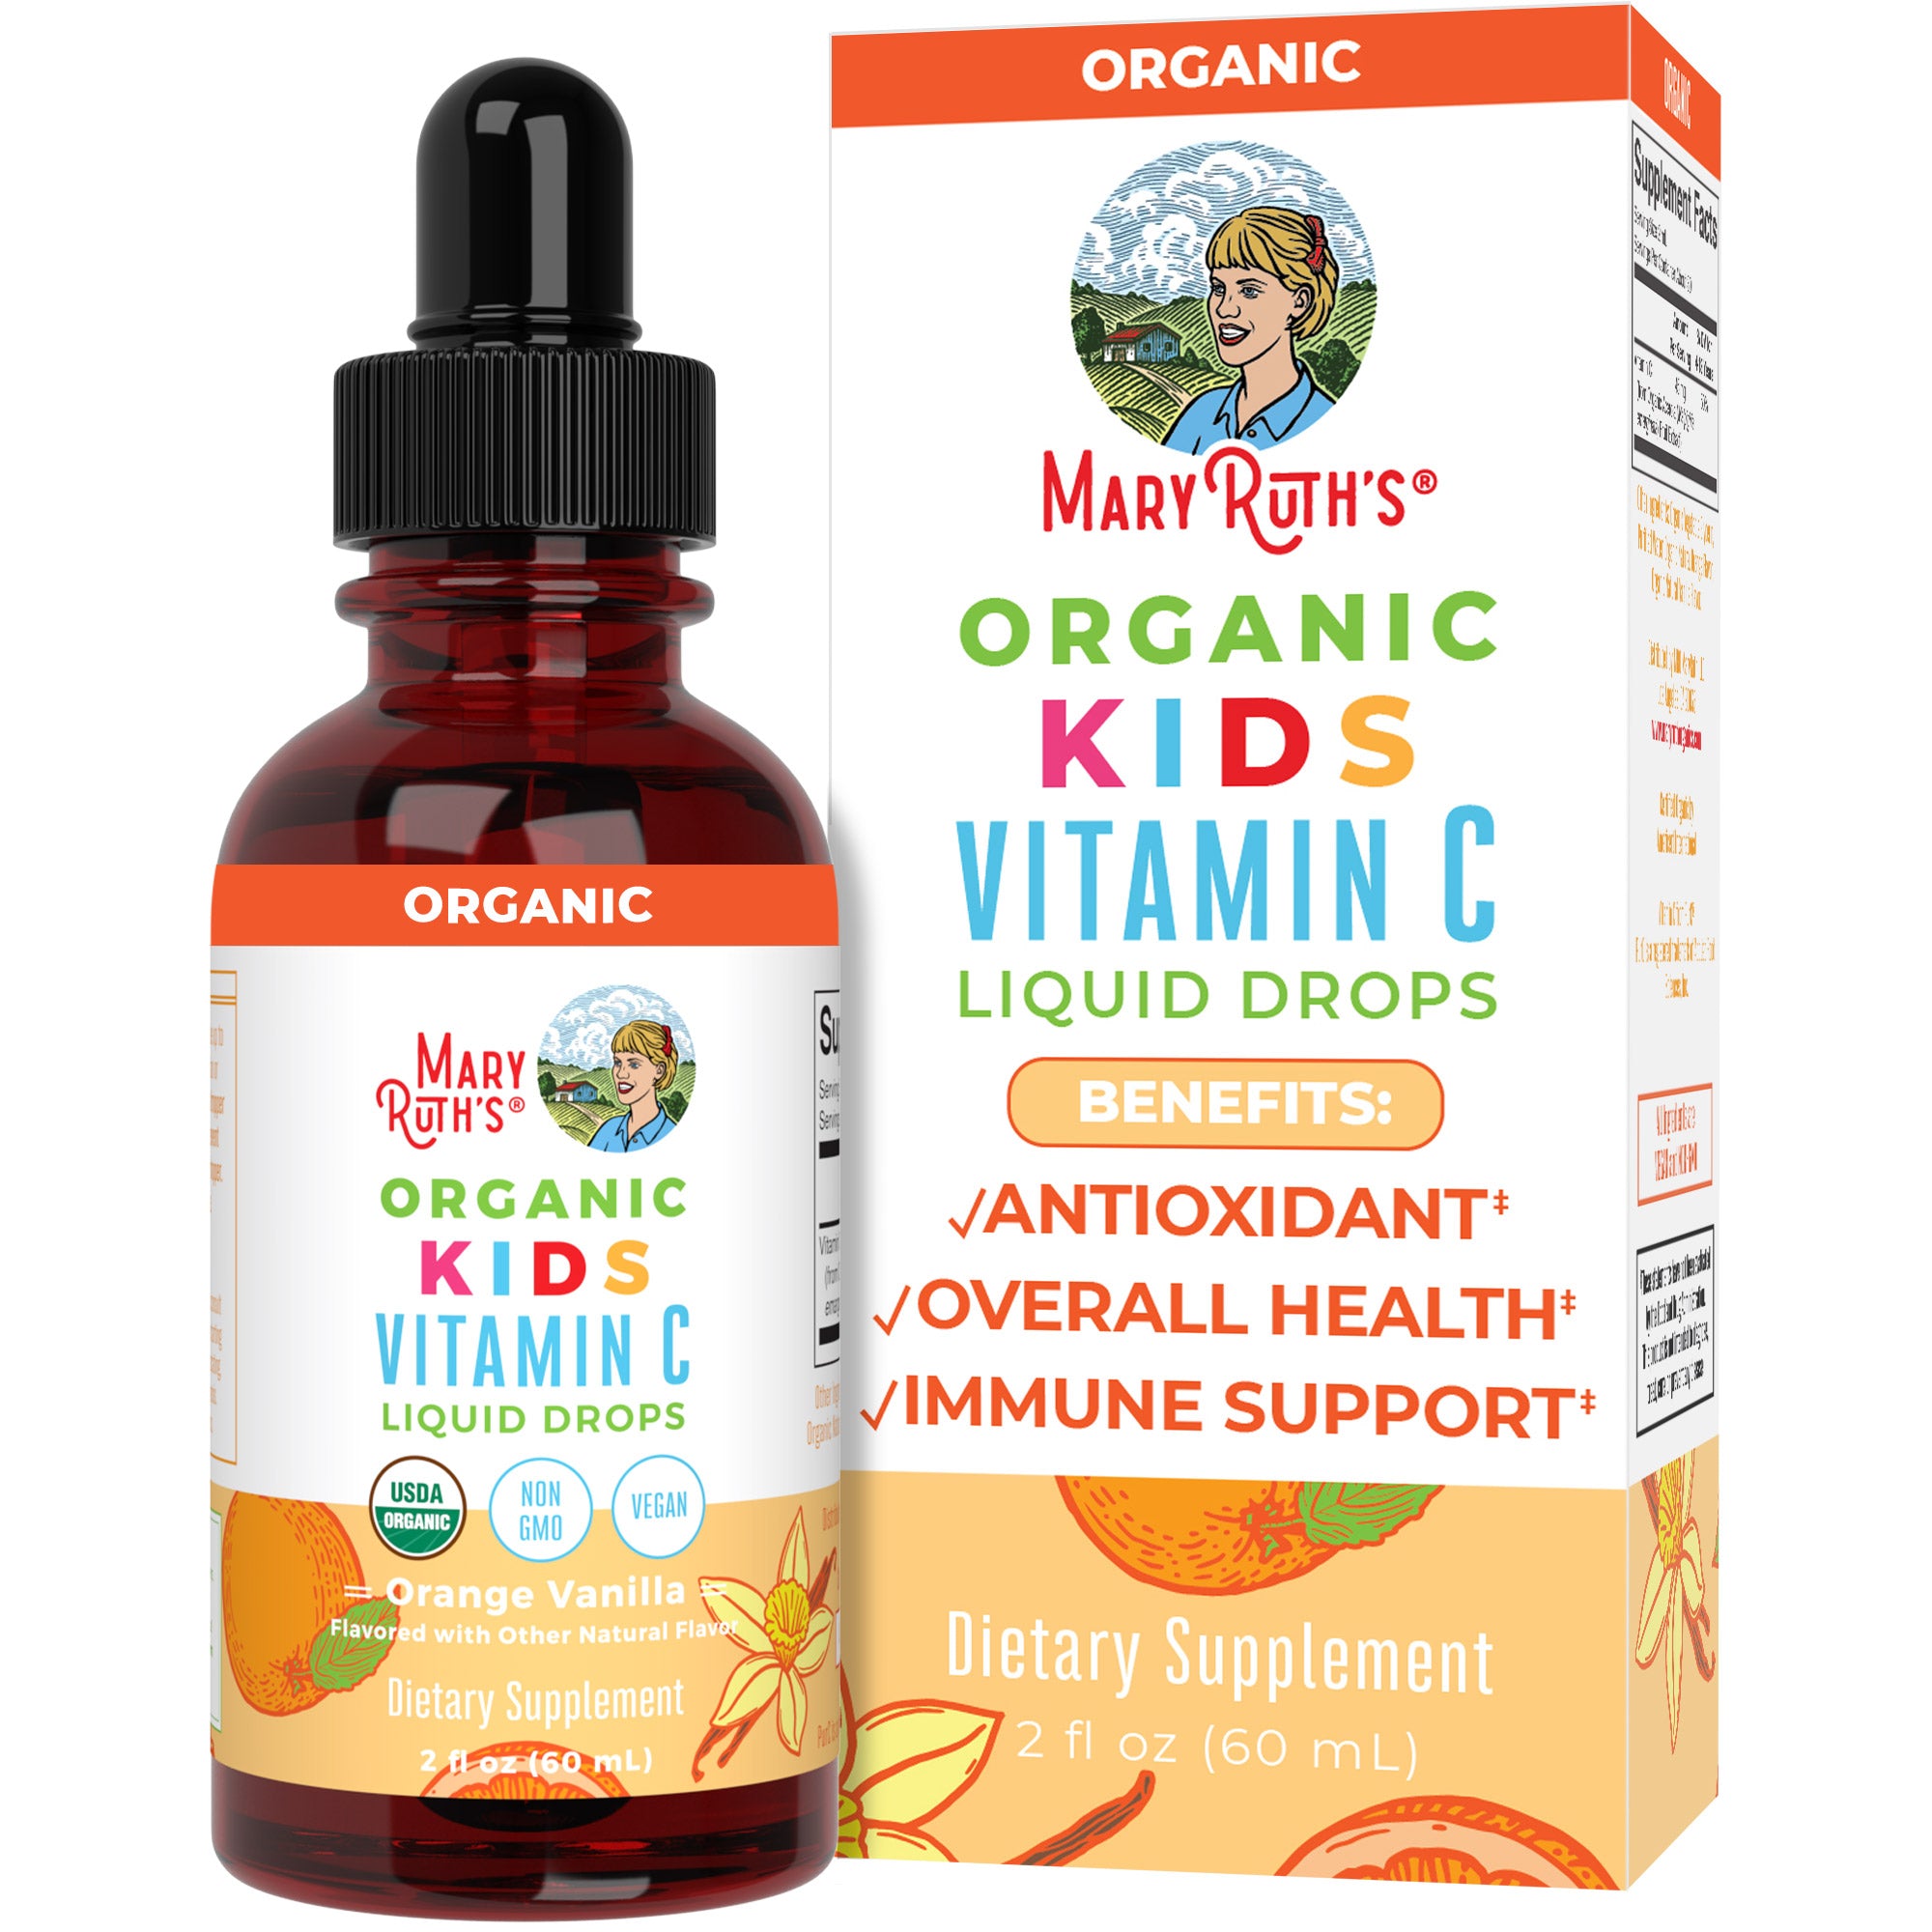 Organic Kids Vitamin C Liquid Drops